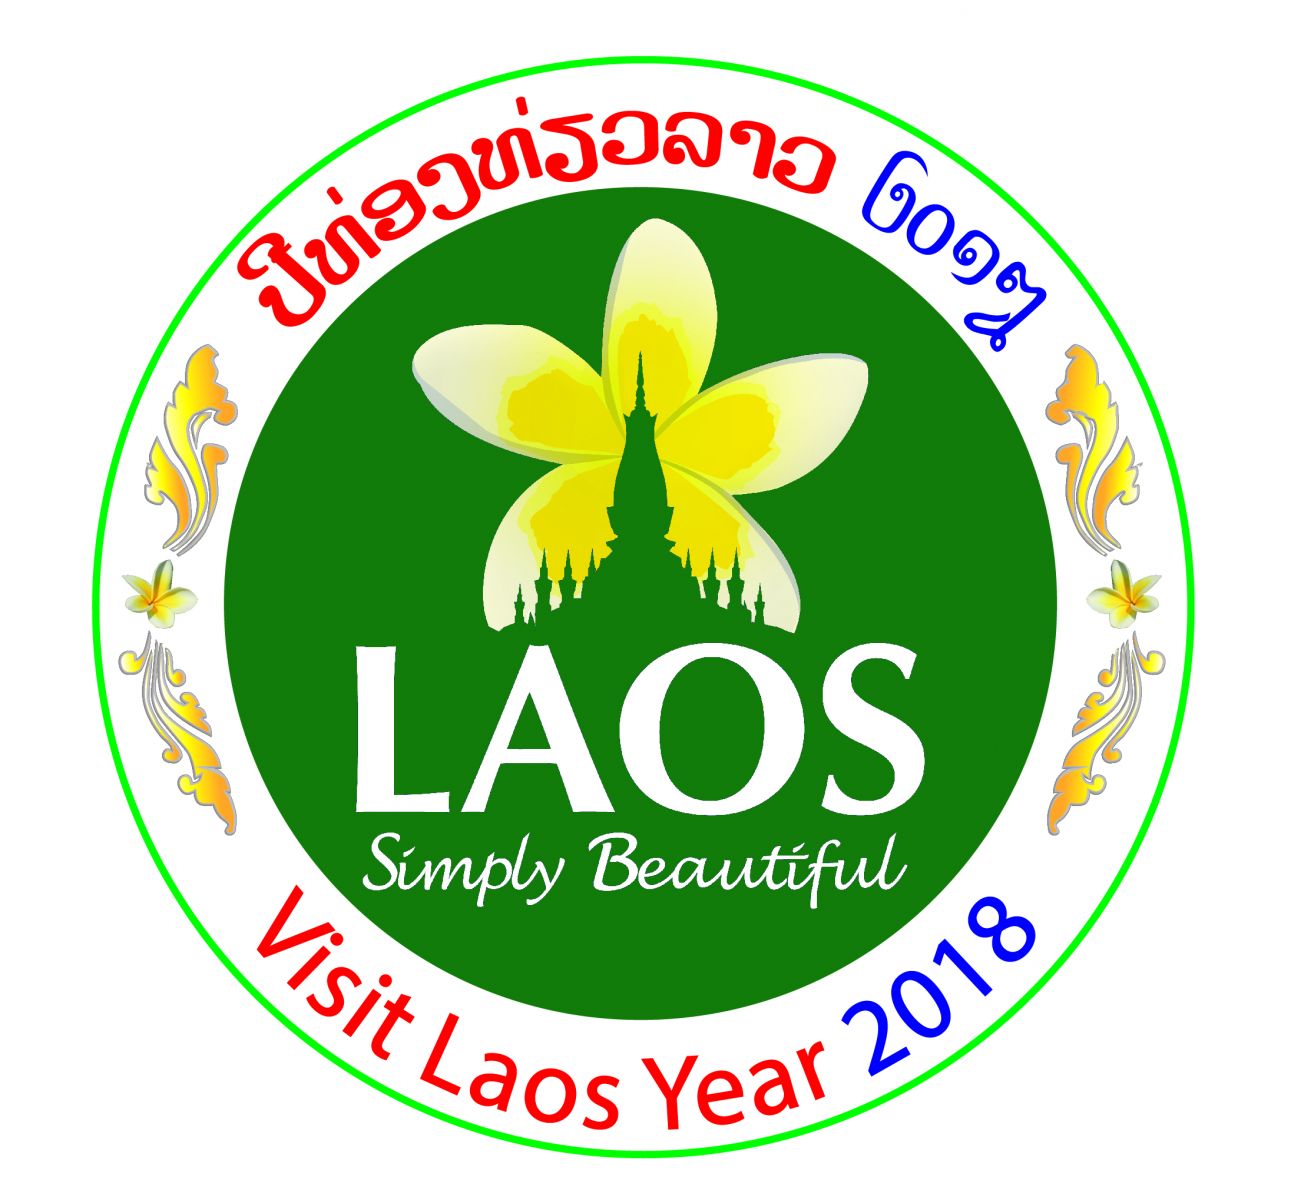 Laos simply beautiful logo